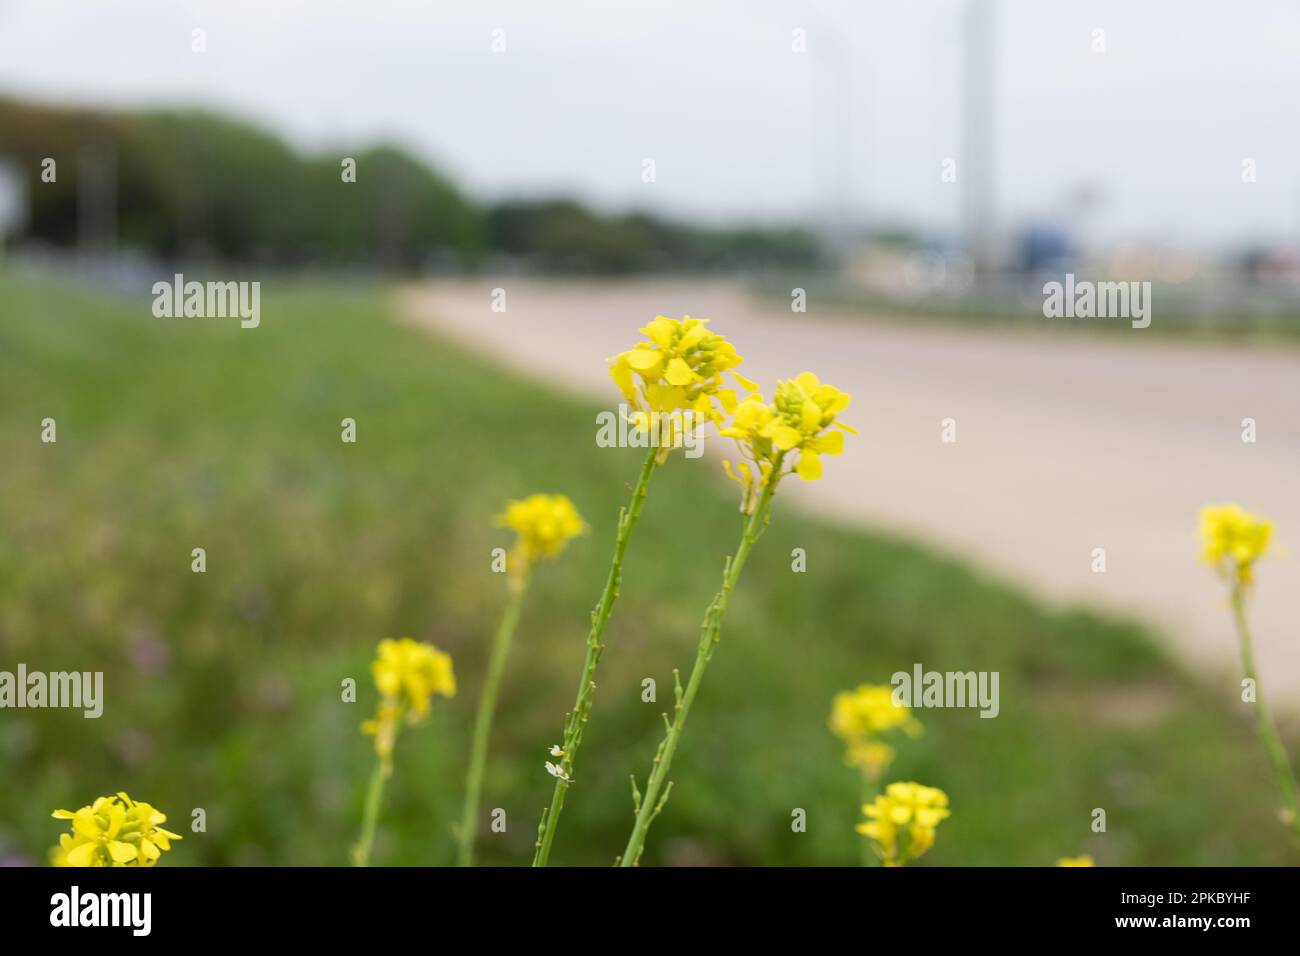 Un groupe de fleurs de Goldenrod jaune de Californie fleurit dans la médiane herbeuse à côté d'une route qui se courbe et qui disparaît dans le fond éloigné. Banque D'Images